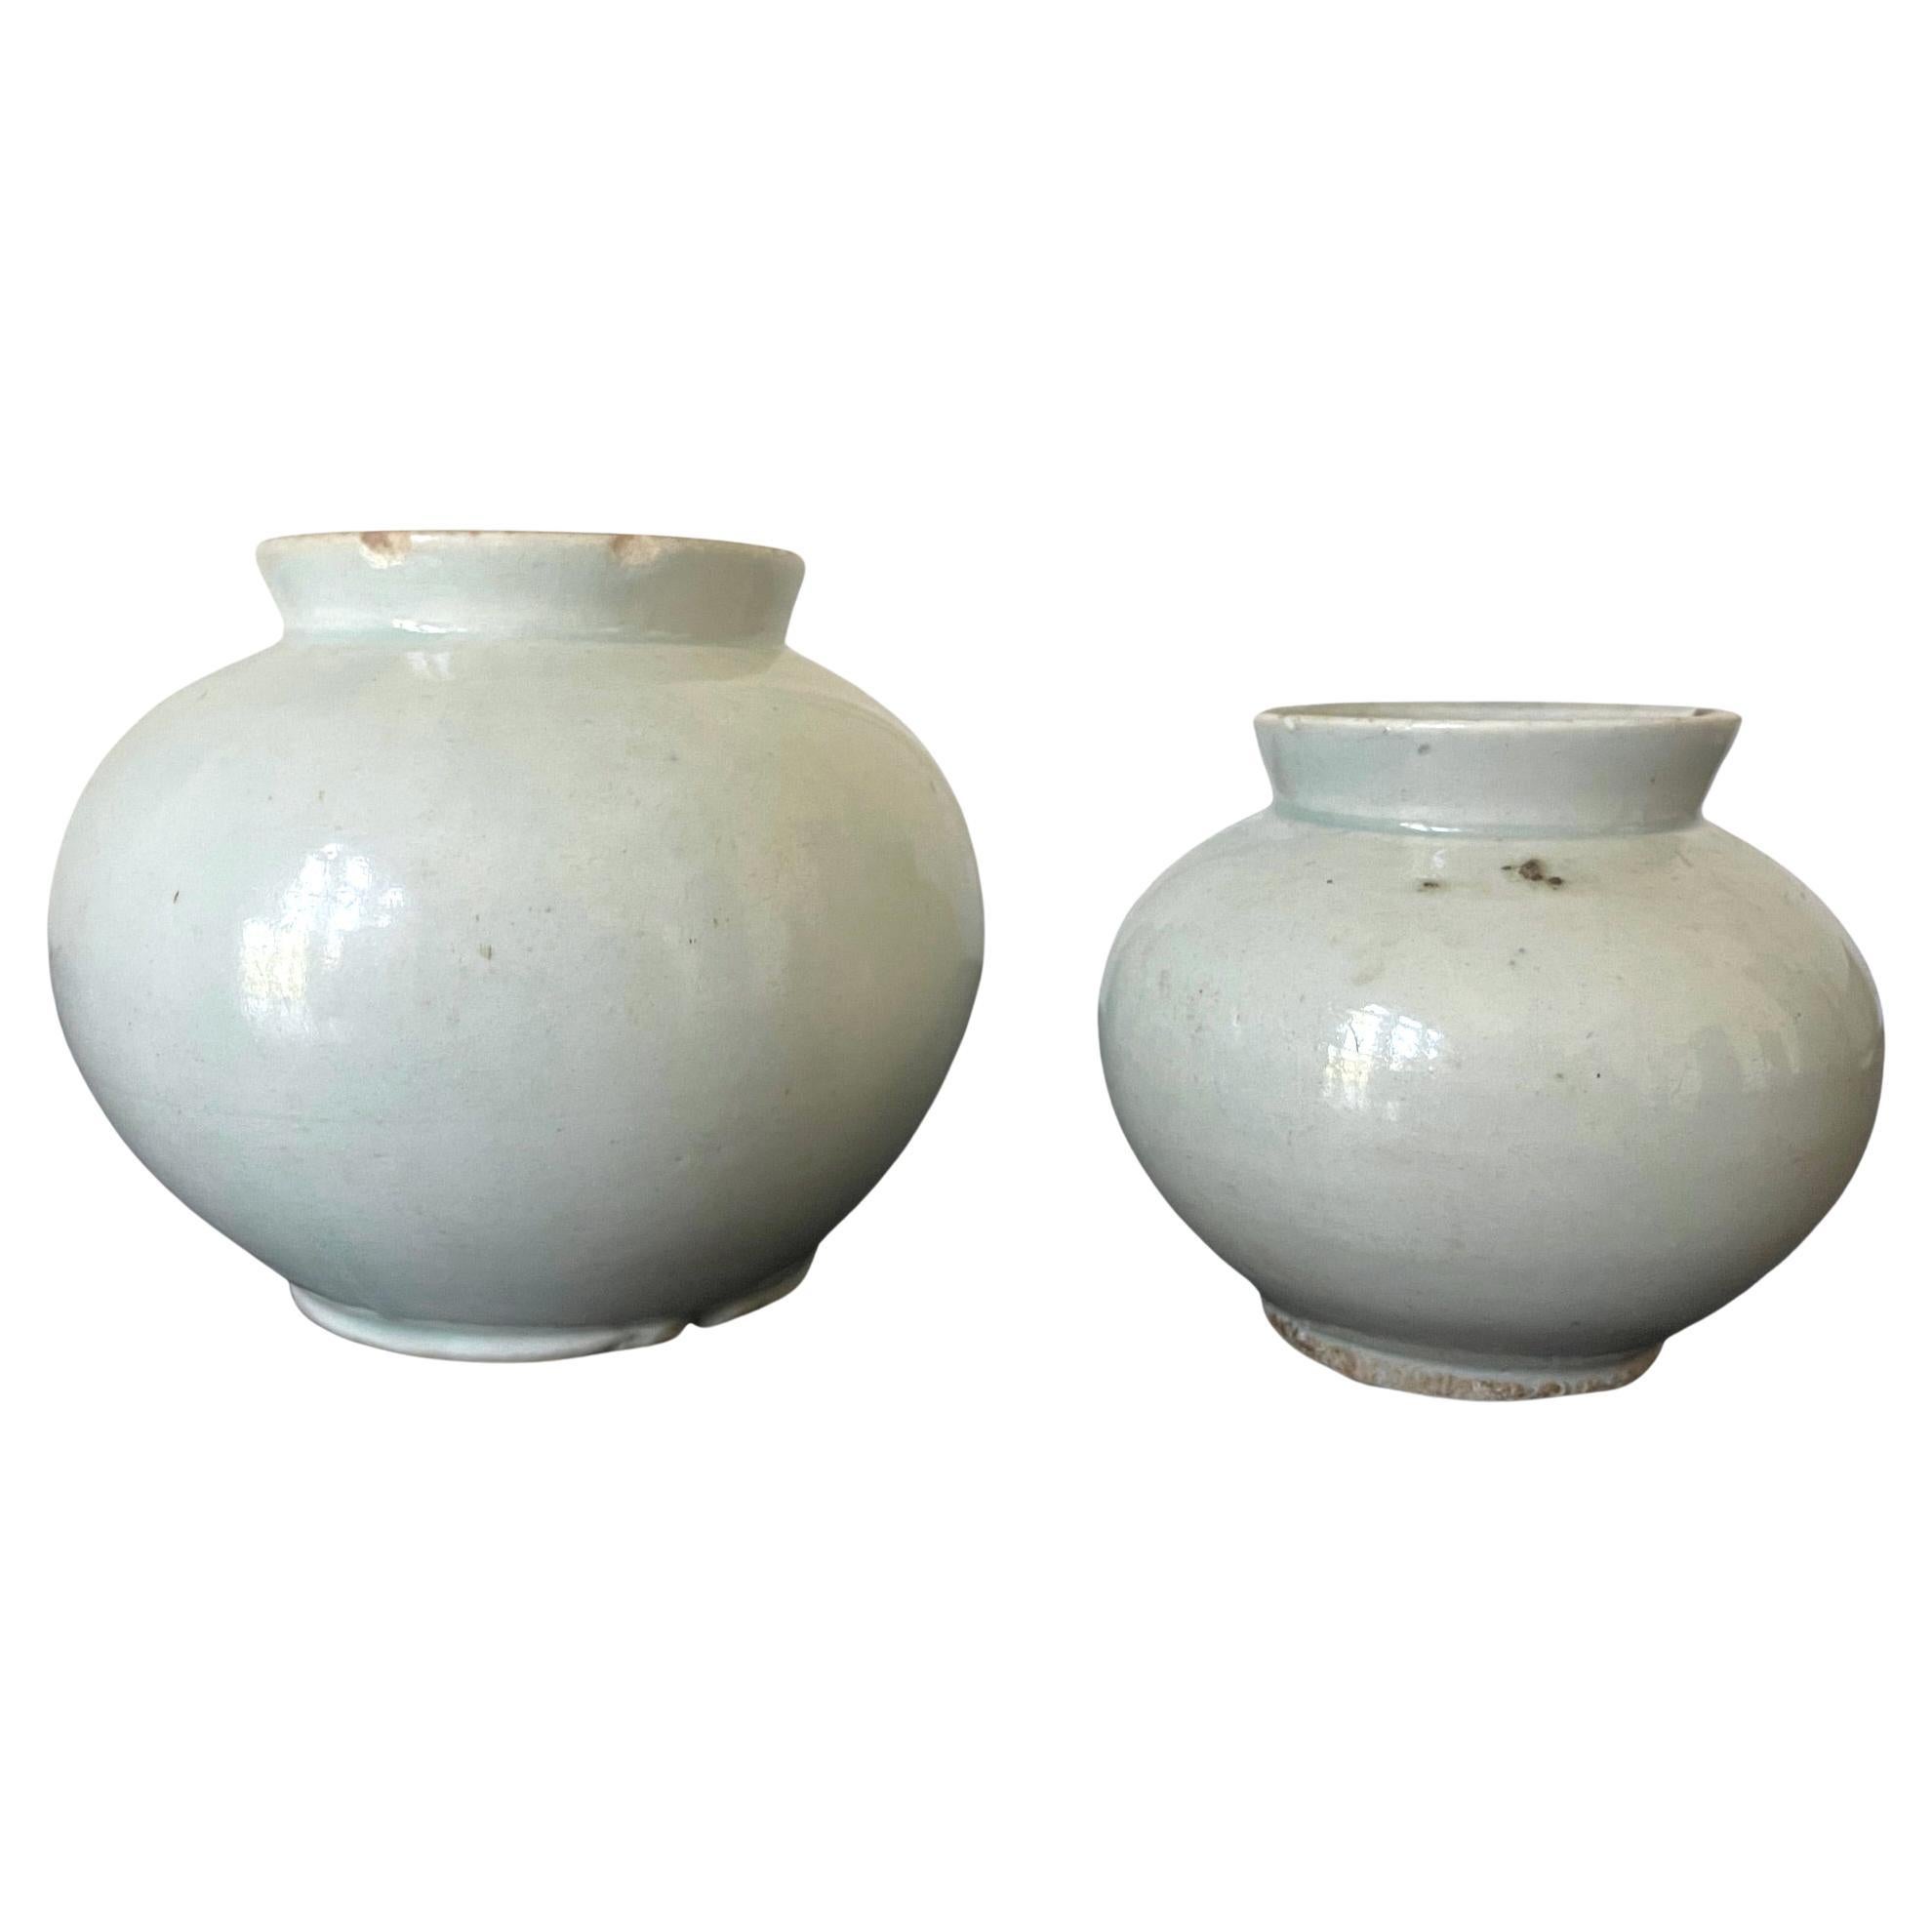 Two Korean White Ceramic Jars Joseon Dynasty